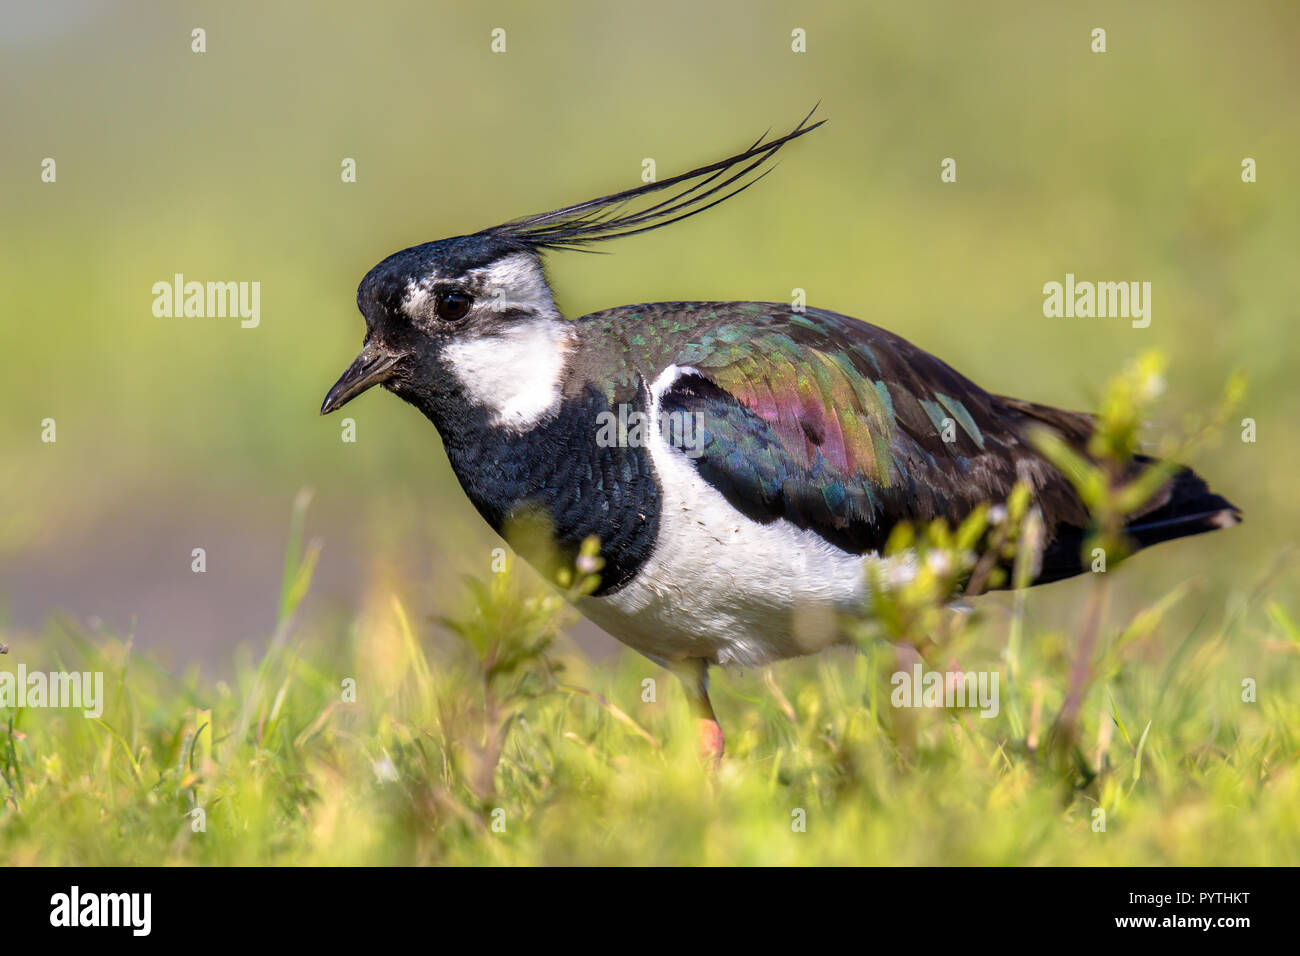 Northern Kiebitz (Vanellus vanellus) Männliche durch Grünland Lebensraum kriechen mit Wind in Crest. Sonne macht Iridiscent Farben auf seinen Vogel sichtbar Stockfoto